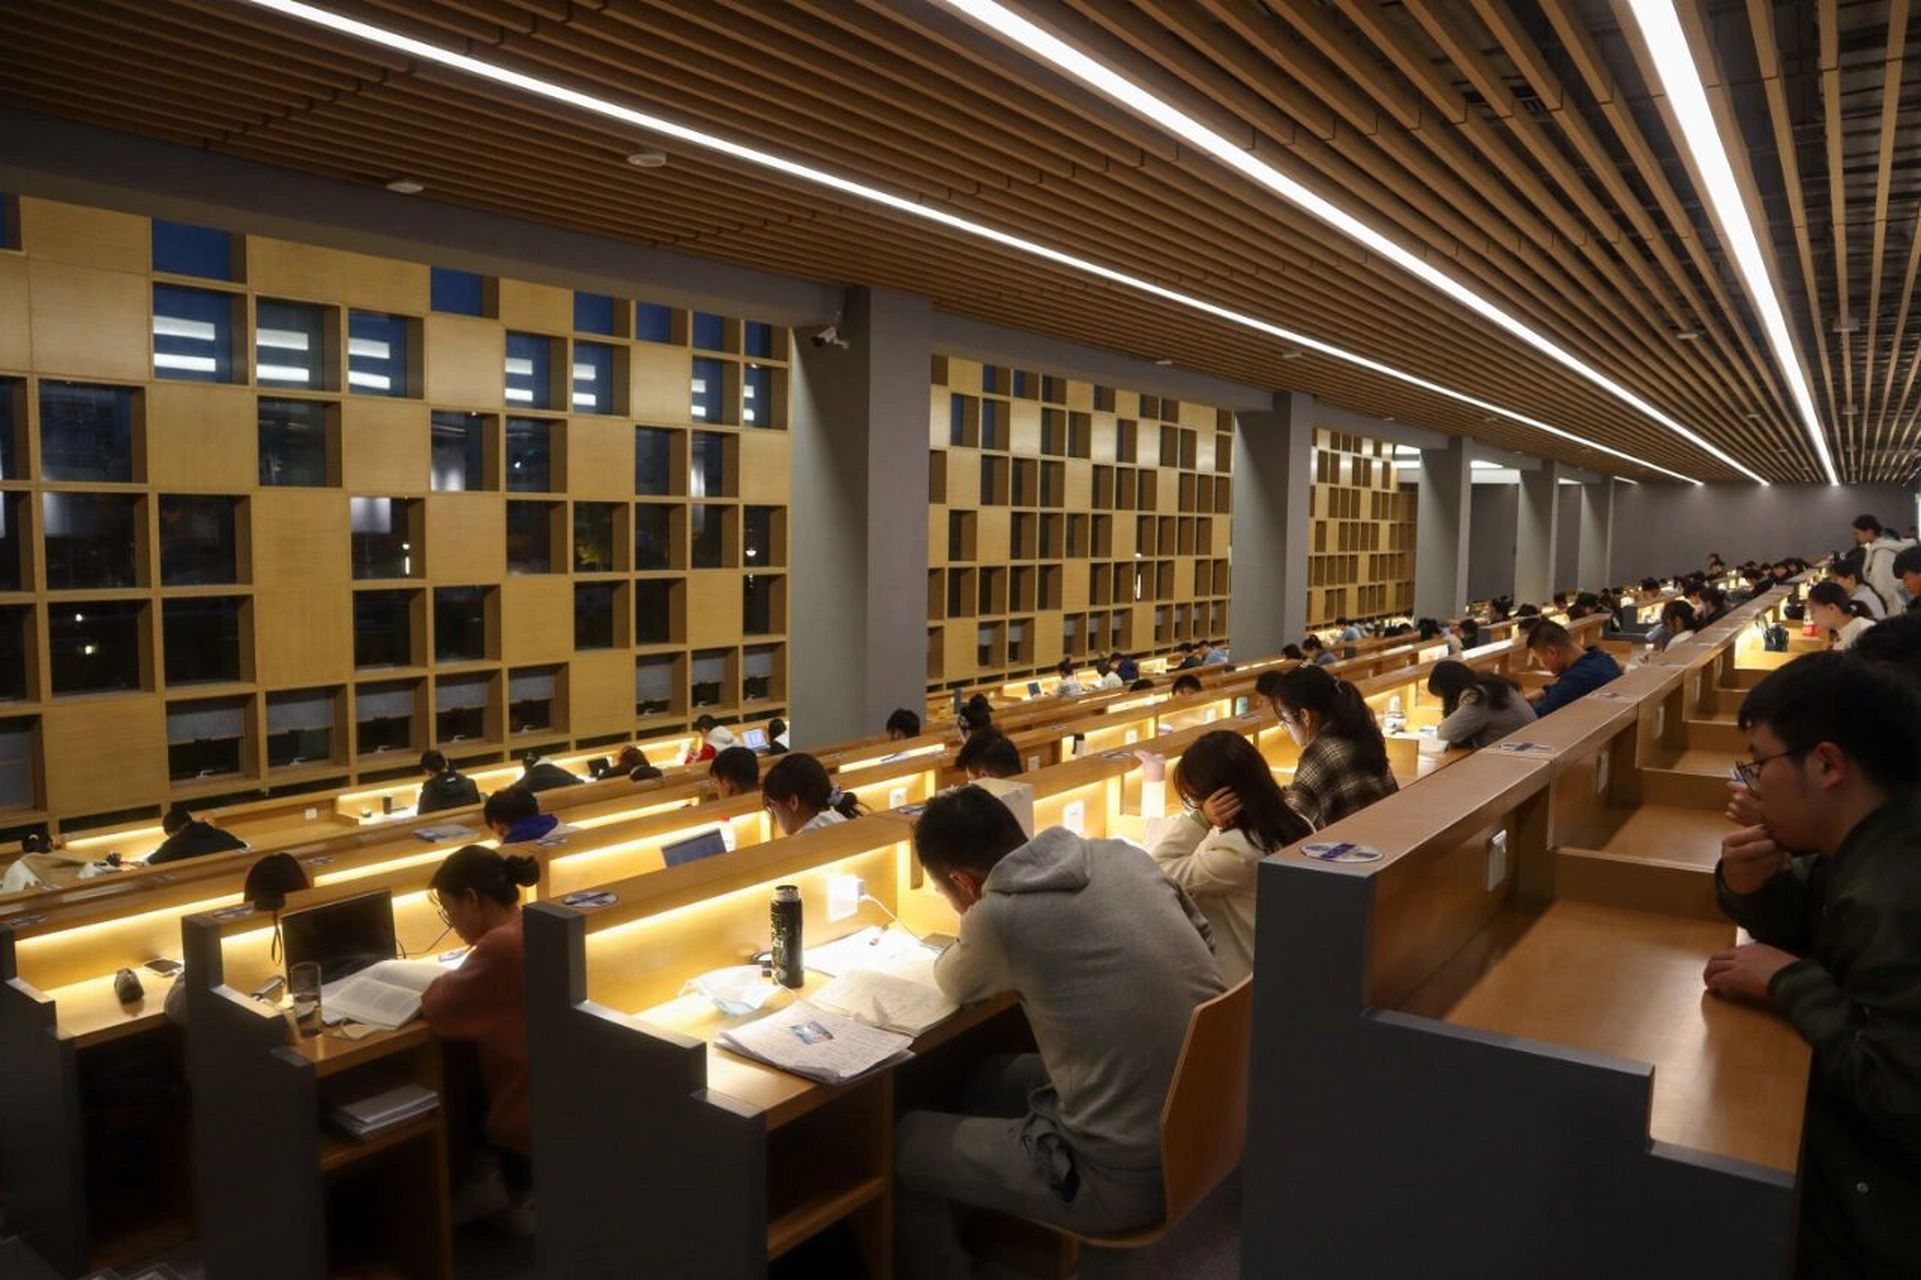 云南开放大学图书馆图片